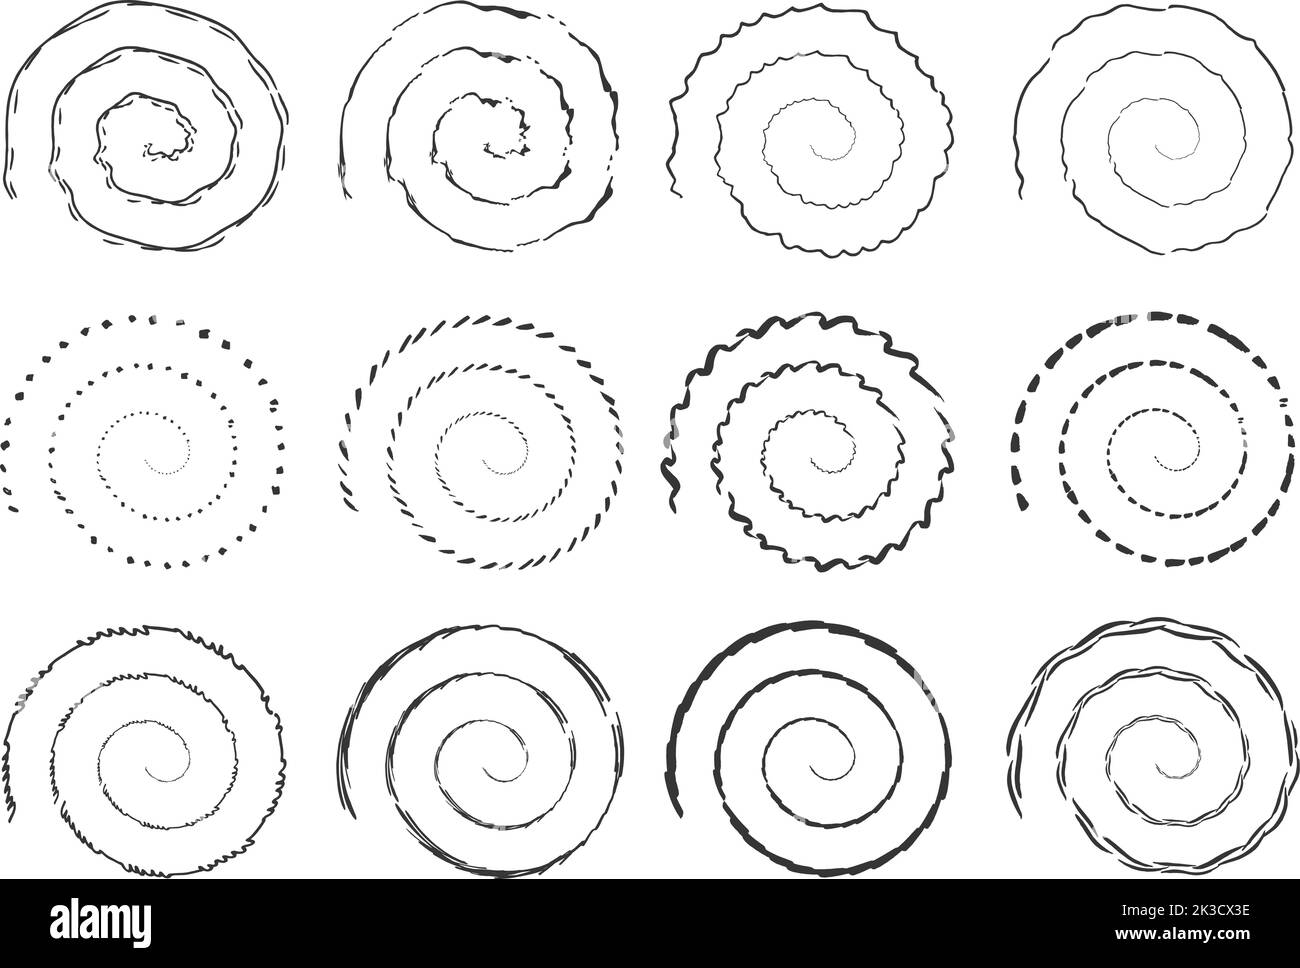 Grunge Black Spirals Kollektion. Isolierte Tintenpinsel kreisen um Elemente. Wirbeln Sie dekorative Spirale, Vektor Vortex Symbole gesetzt. Wirbelndes Design von Grunge i Stock Vektor